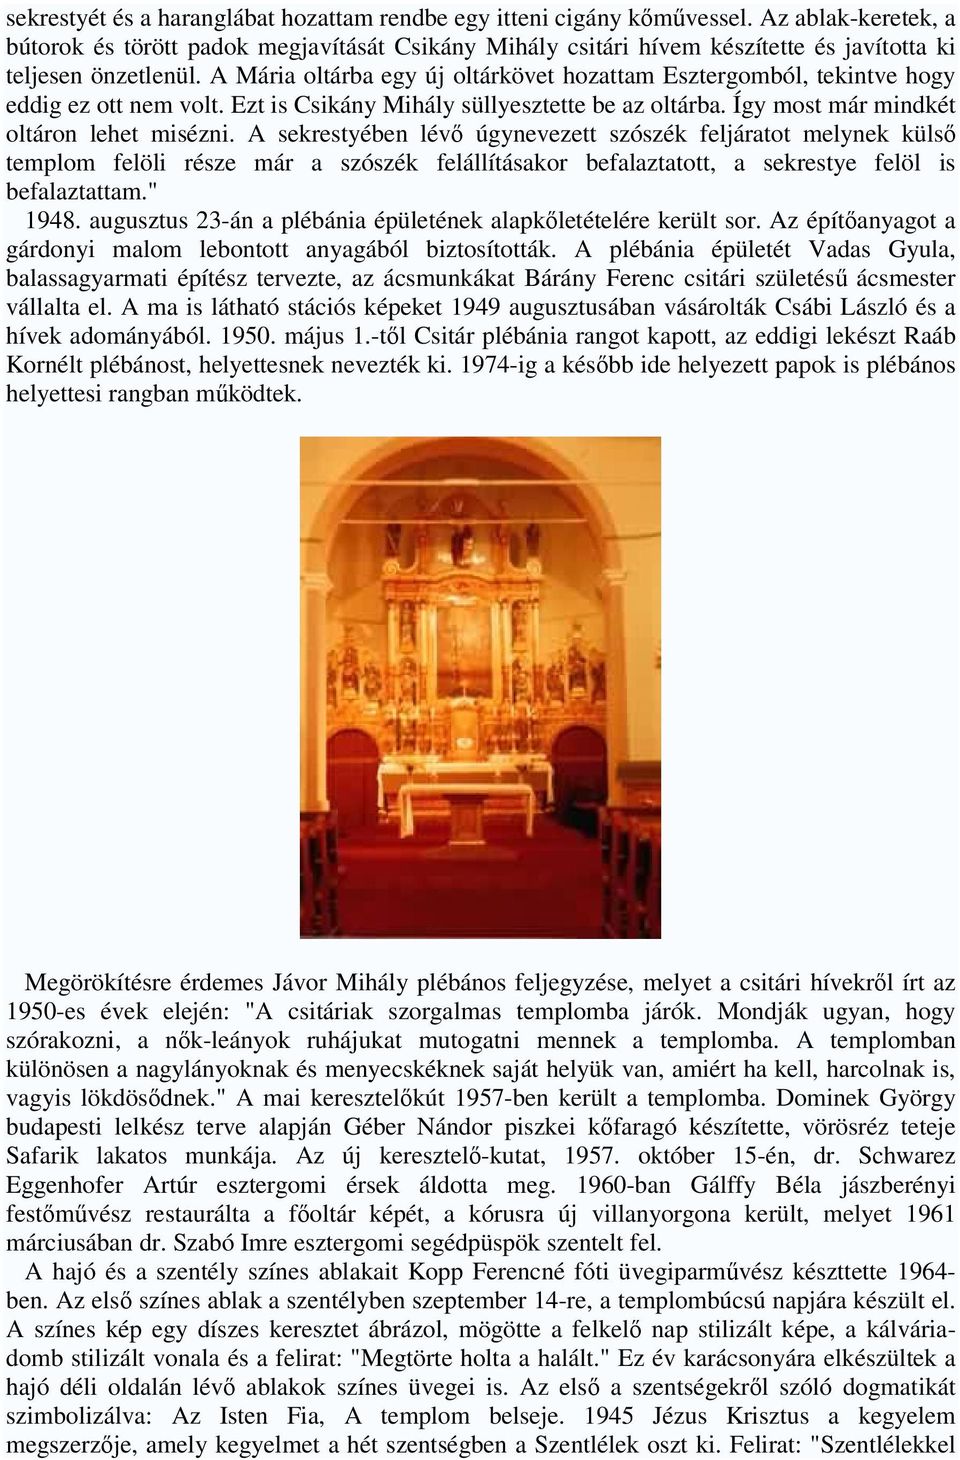 A Mária oltárba egy új oltárkövet hozattam Esztergomból, tekintve hogy eddig ez ott nem volt. Ezt is Csikány Mihály süllyesztette be az oltárba. Így most már mindkét oltáron lehet misézni.